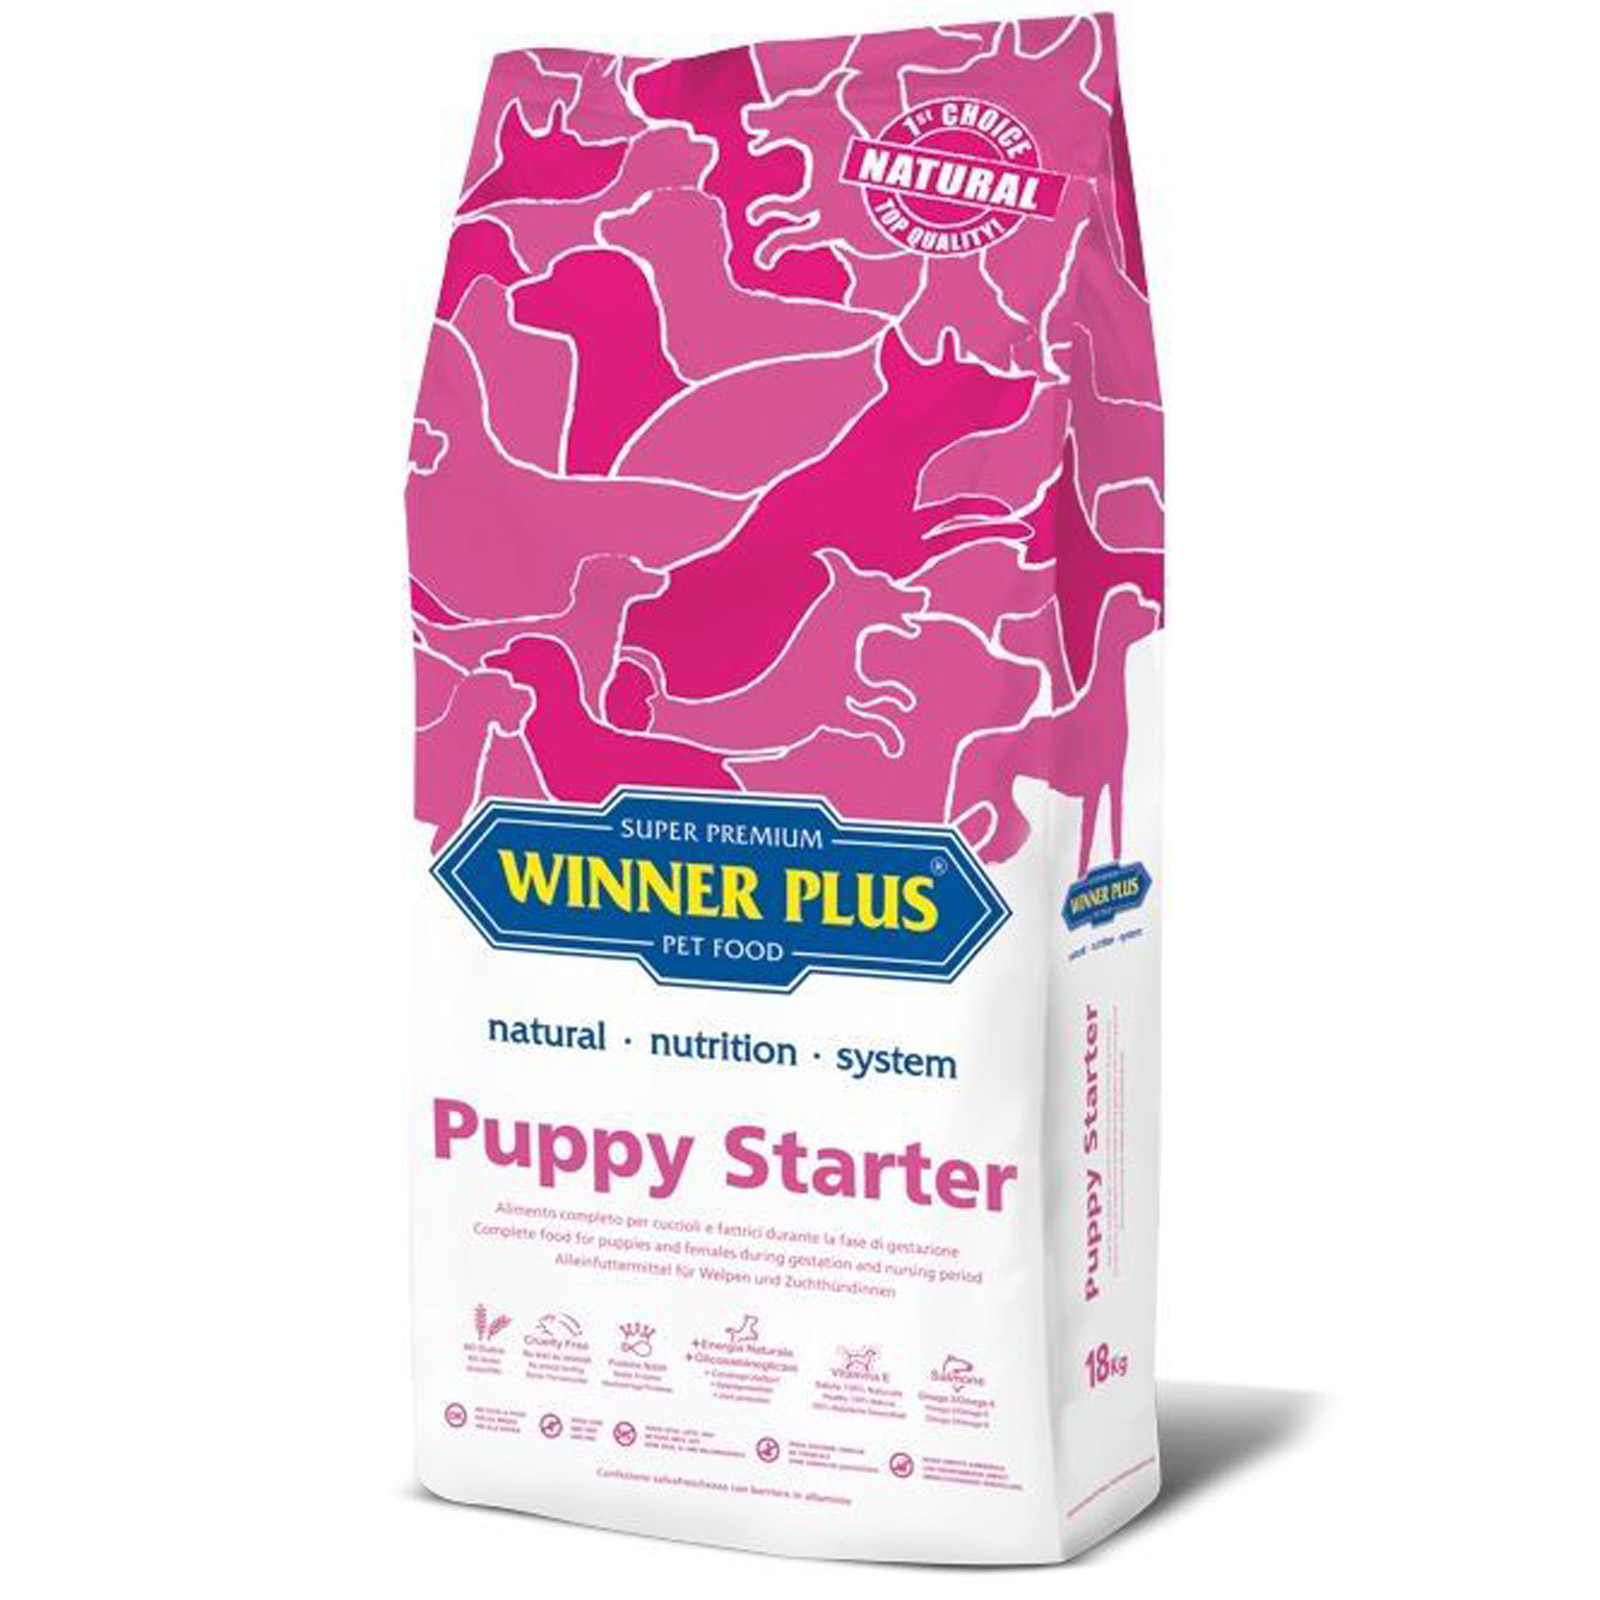 Winner Plus Super Premium Puppy Starter